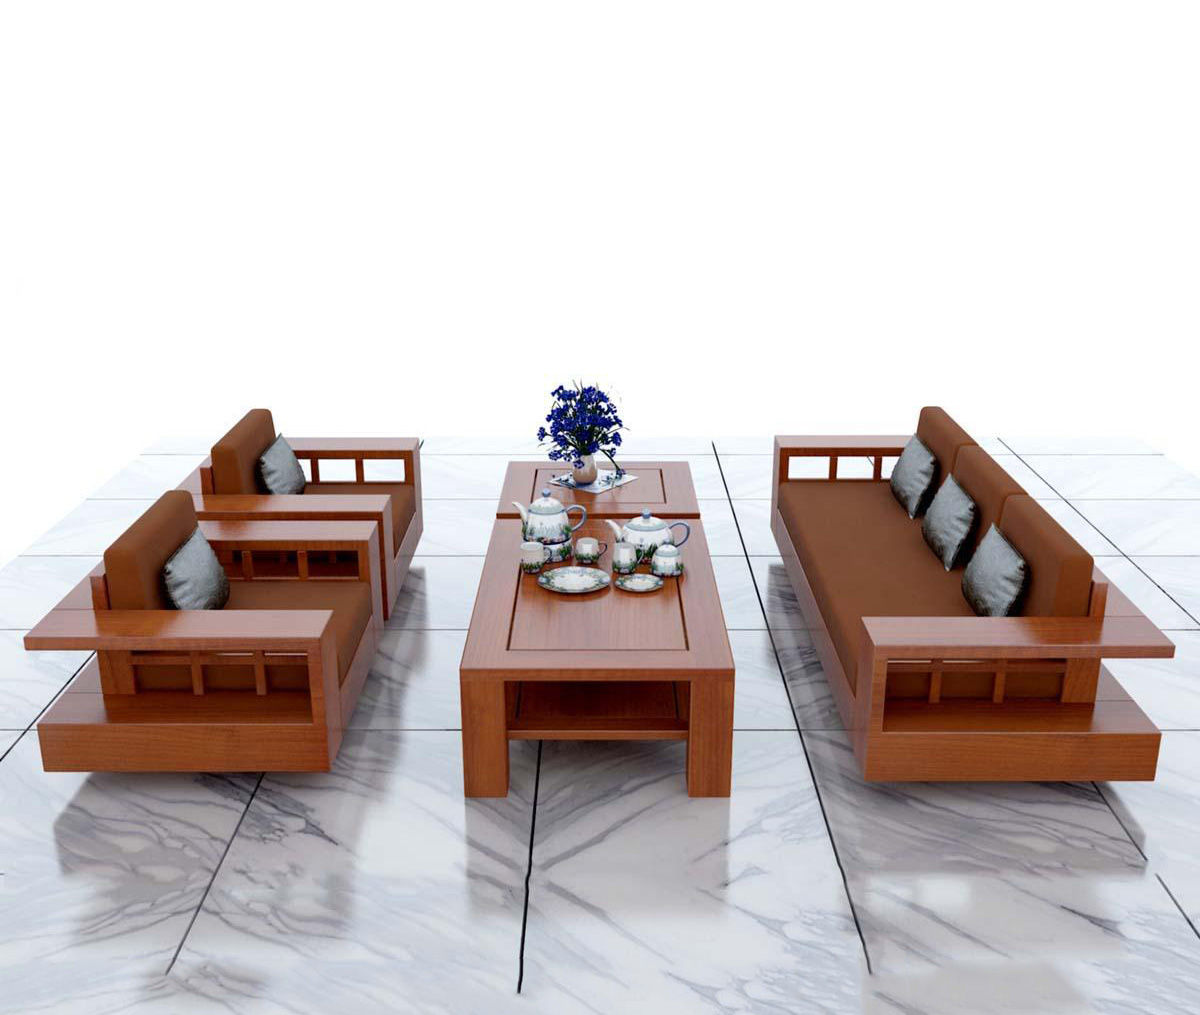 Mẫu bàn ghế gỗ phòng khách đơn giản - Bàn Ghế Gỗ Phòng Khách: Sự đơn giản luôn góp phần làm cho không gian sống của bạn trở nên sang trọng và tinh tế hơn. Hãy trang trí cho phòng khách của bạn thêm phần tuyệt vời bởi mẫu bàn ghế gỗ phòng khách đơn giản. Với thiết kế thanh lịch và chất liệu gỗ tự nhiên, sản phẩm chắc chắn sẽ mang lại sự ấm áp và gần gũi cho không gian sống của bạn.